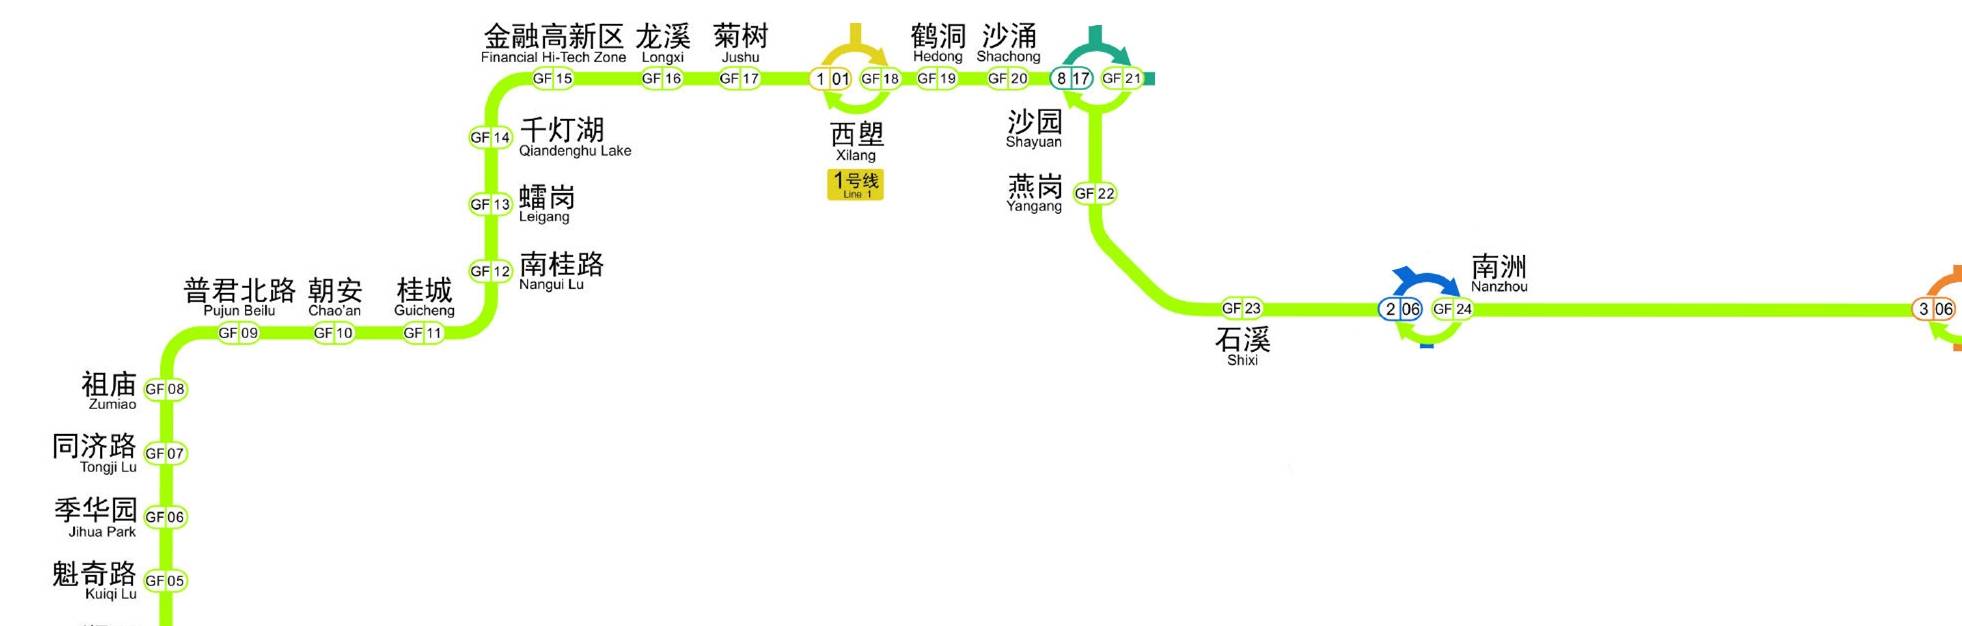 原创定了就在明天广州地铁3线齐发新增快车运行模式了解一下